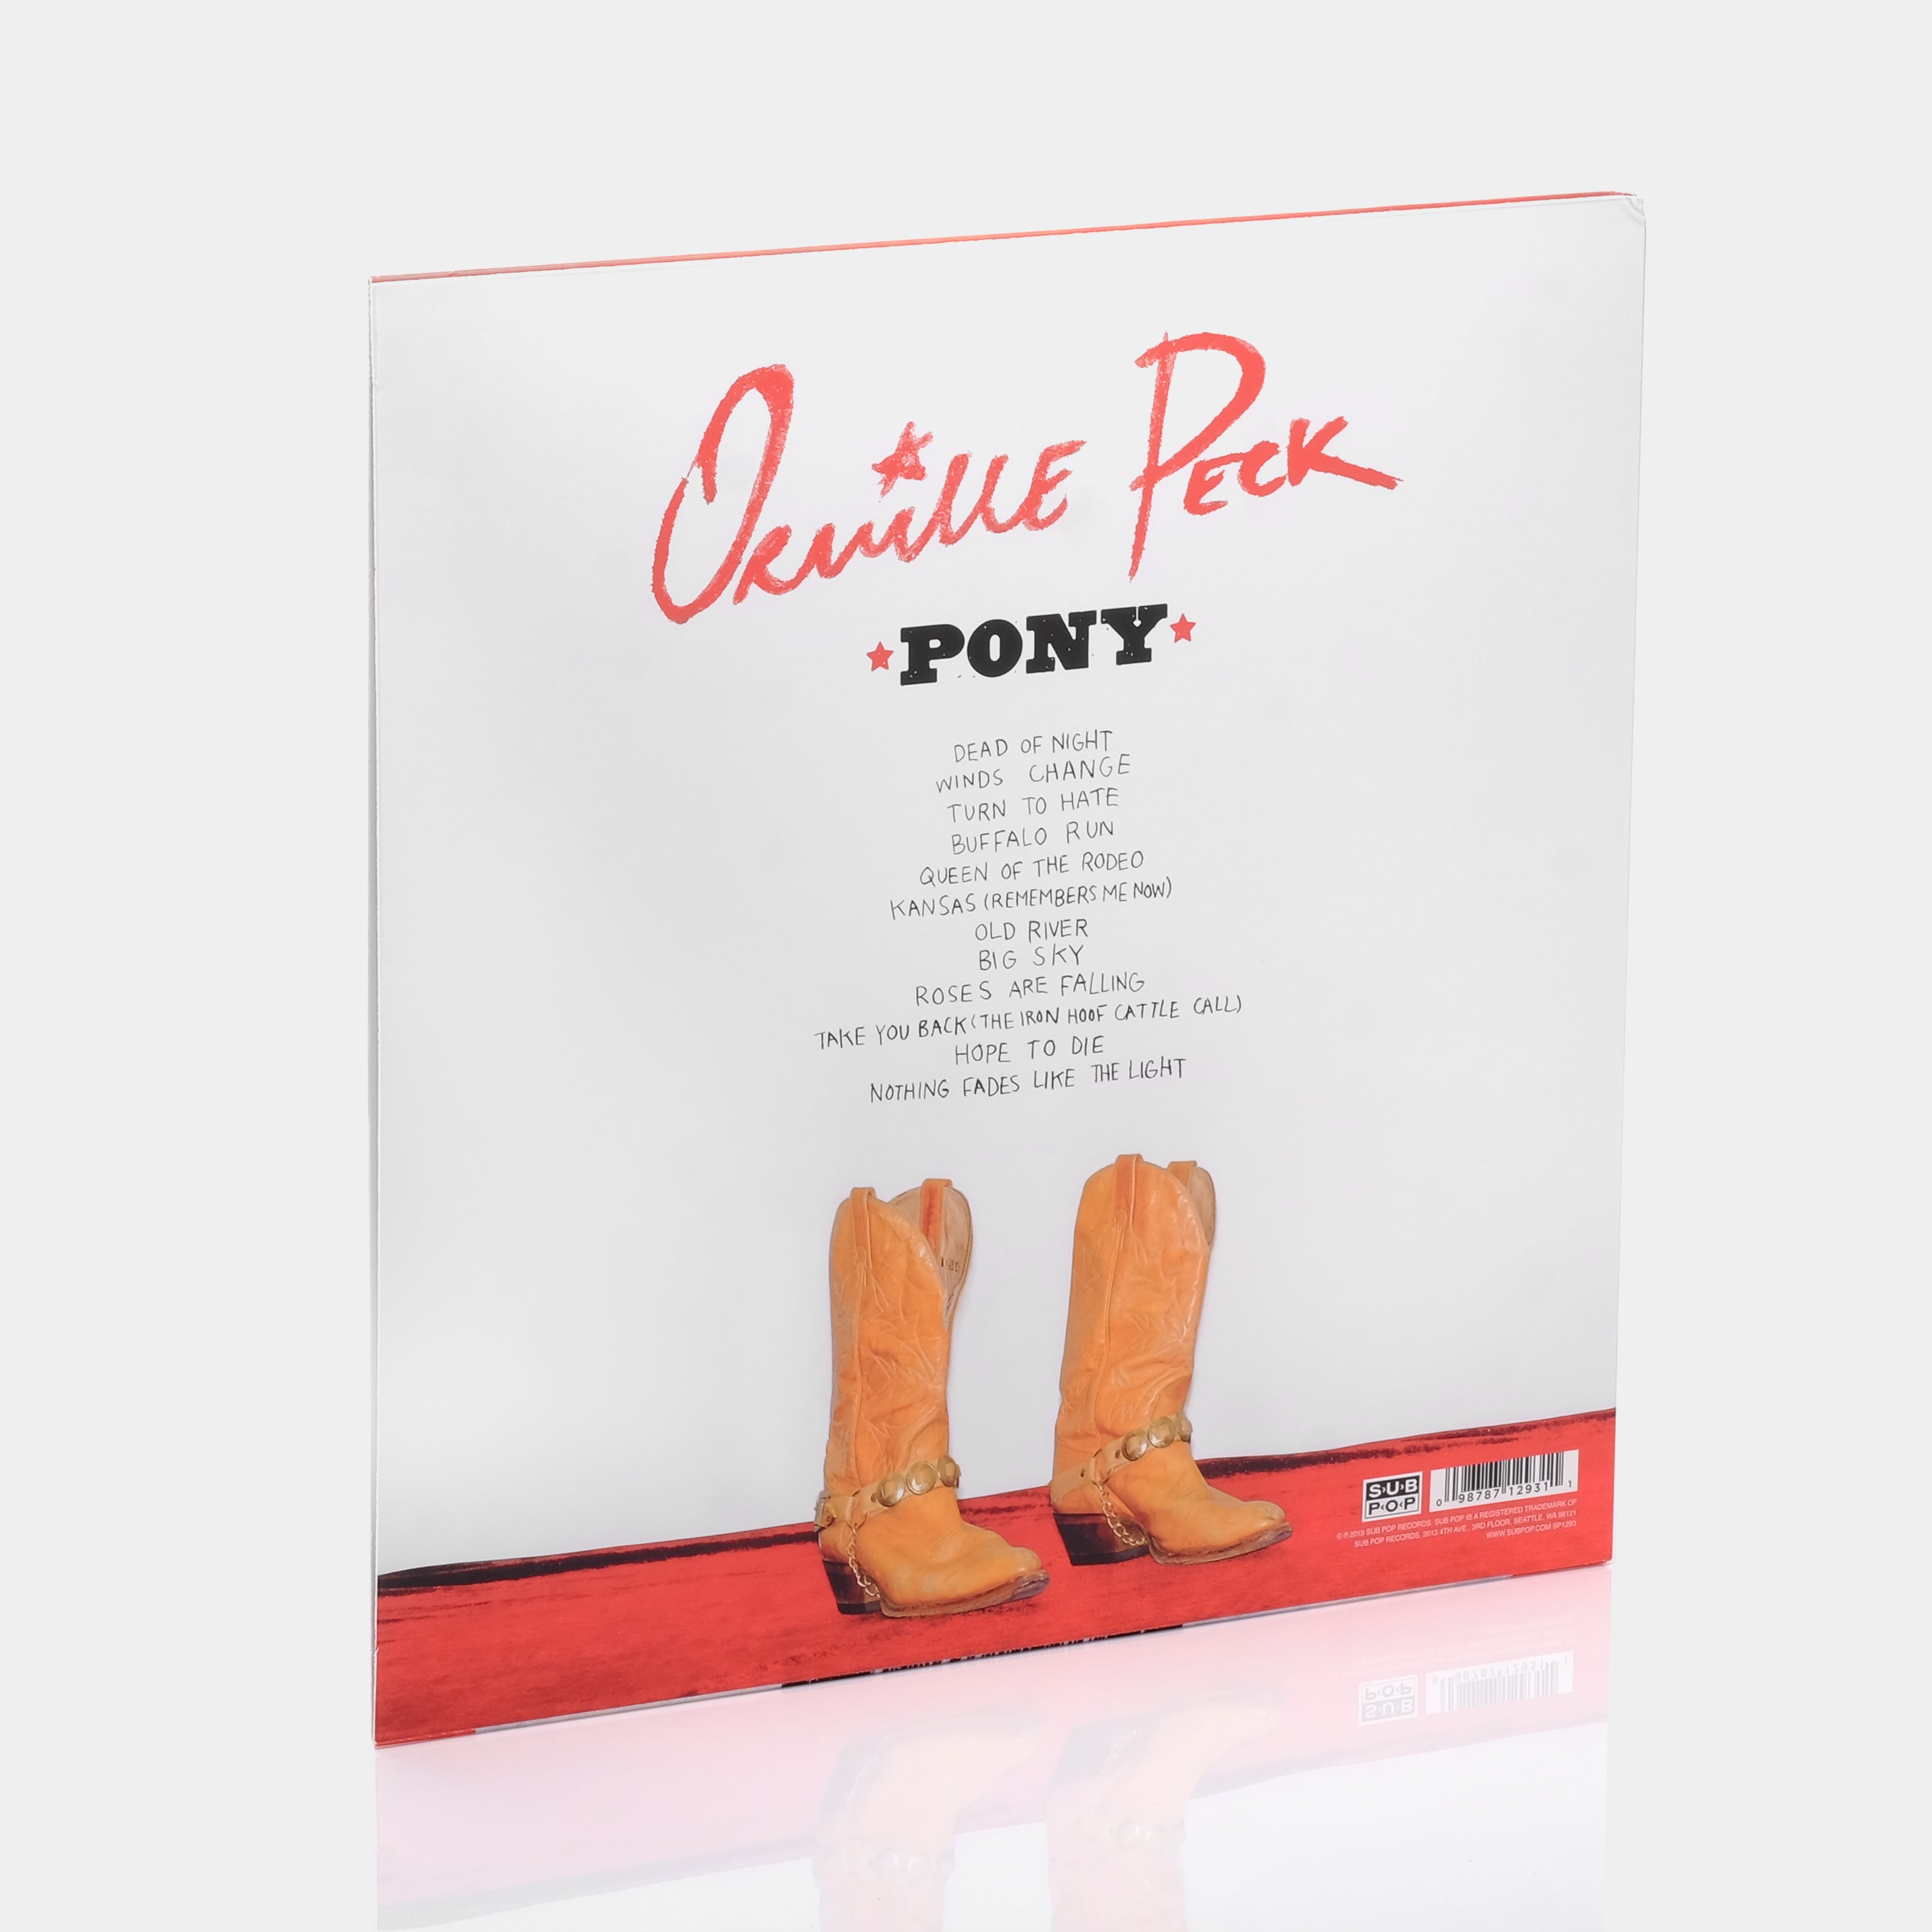 Orville Peck - Pony LP Vinyl Record